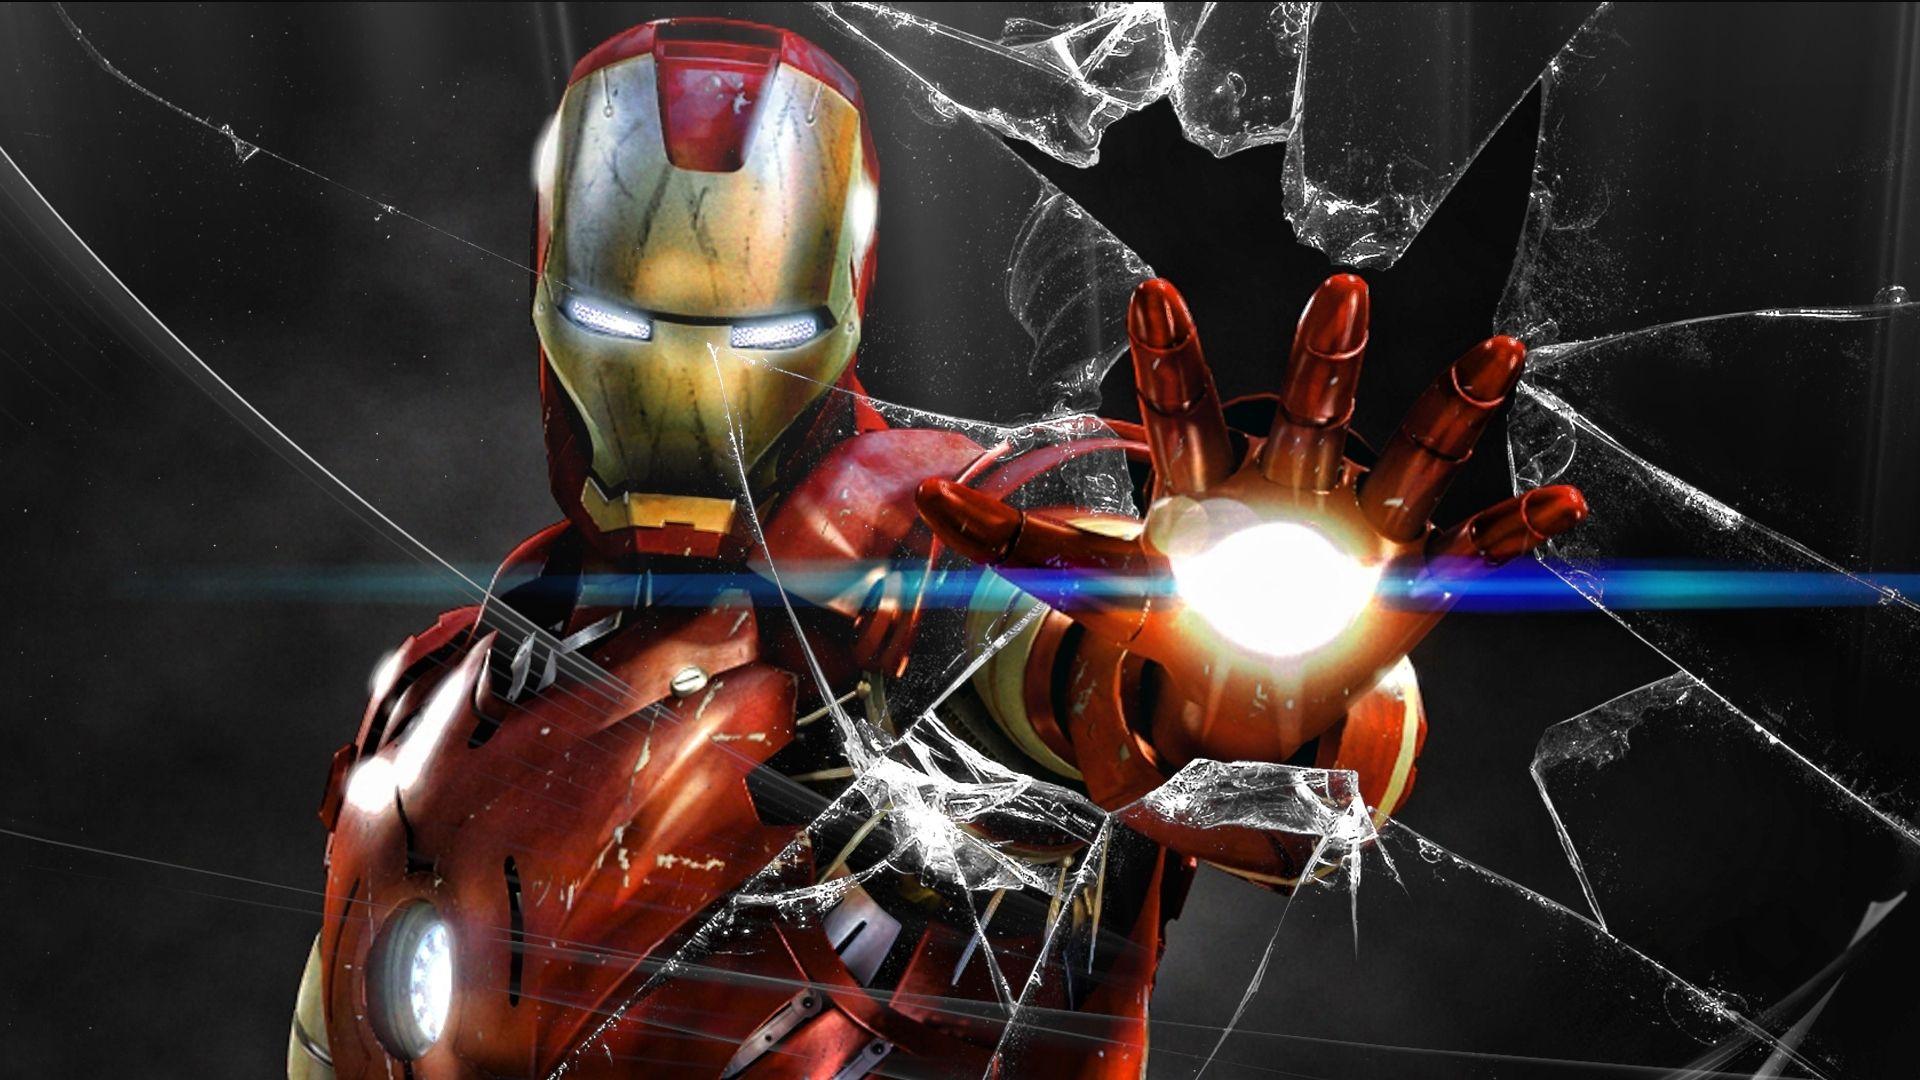 Cool Iron Man 4 Wallpaper Desktop. Free Download GameFree Download Game